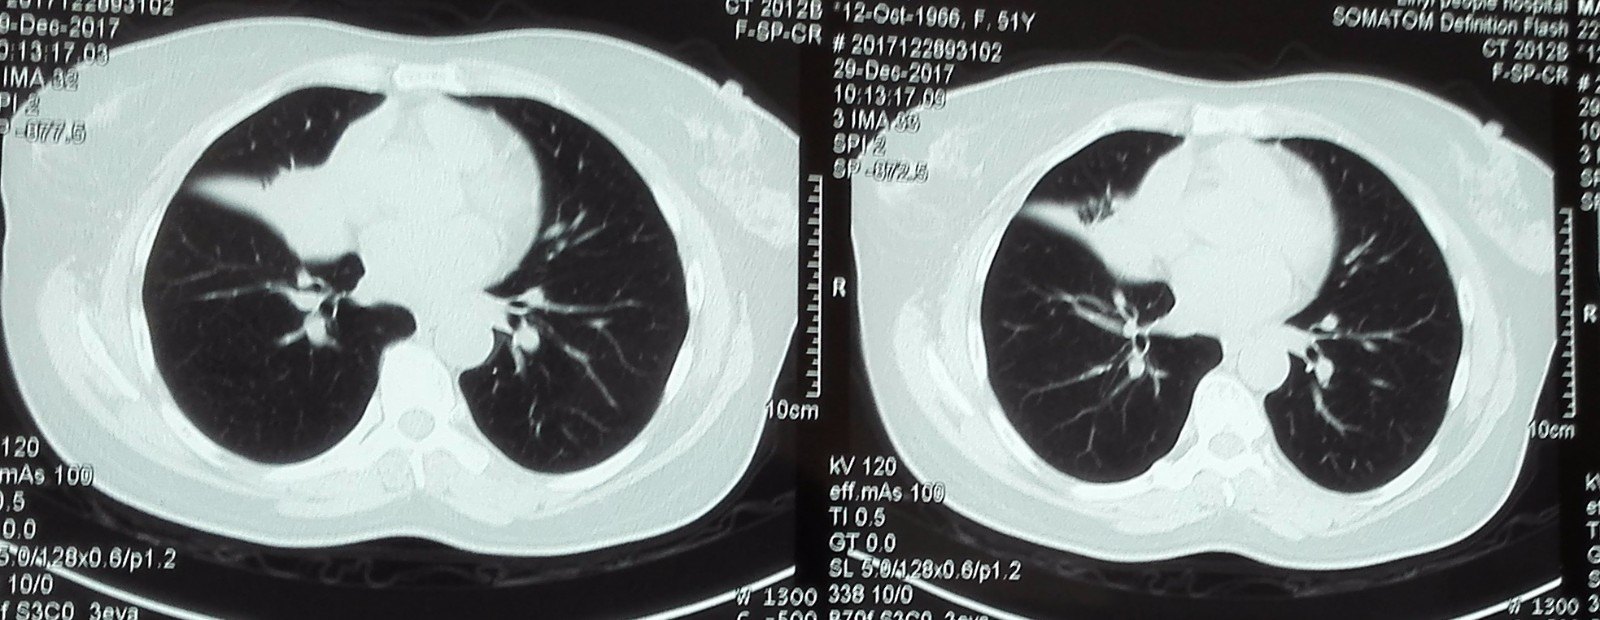 肺不张,肺癌,管腔堵塞,支气管镜检查告诉你答案